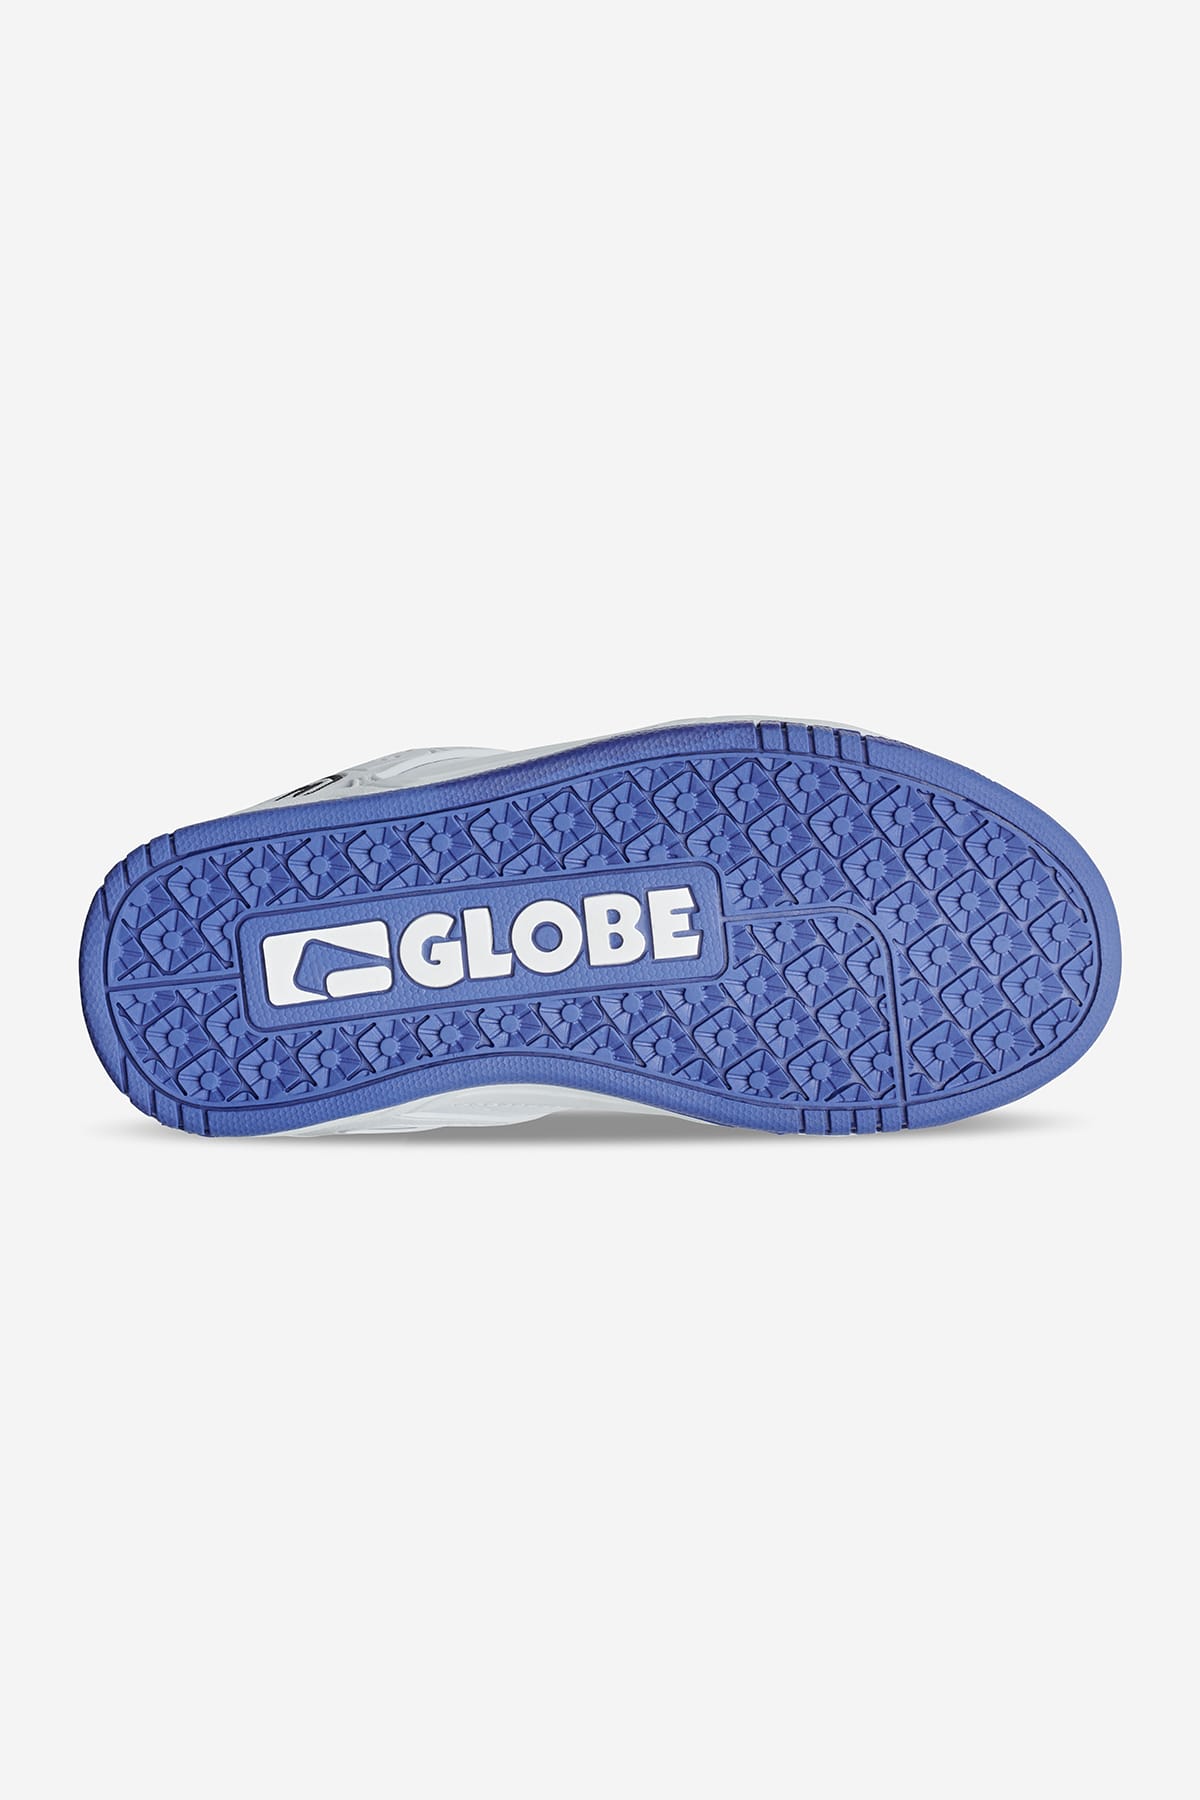 Globe - Tilt Kids - White/Cobalt - skateboard Schuhe